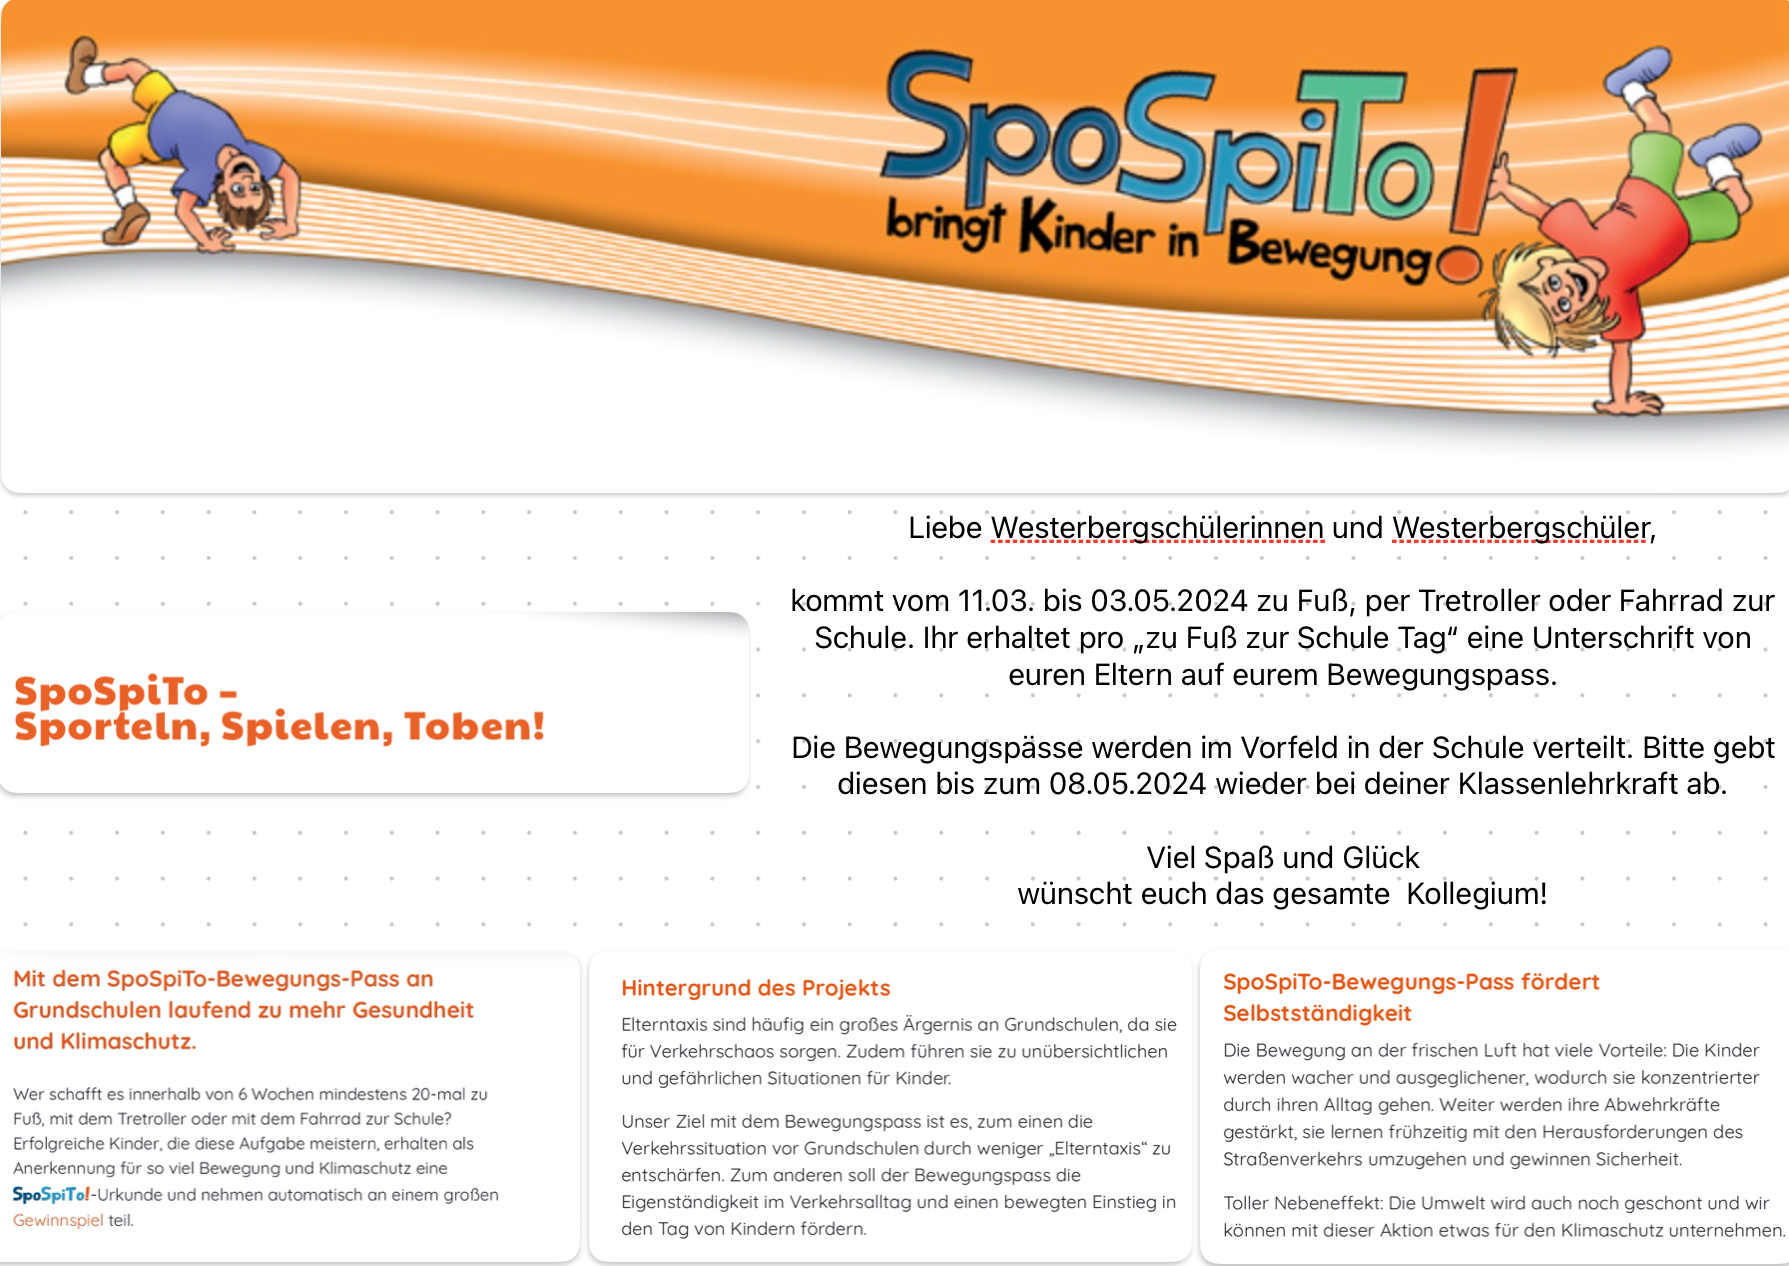 SpoSpiTo-Logo und Aufruf an alle Kinder der Westerbergschule zu Fuß zur Schule zu kommen.